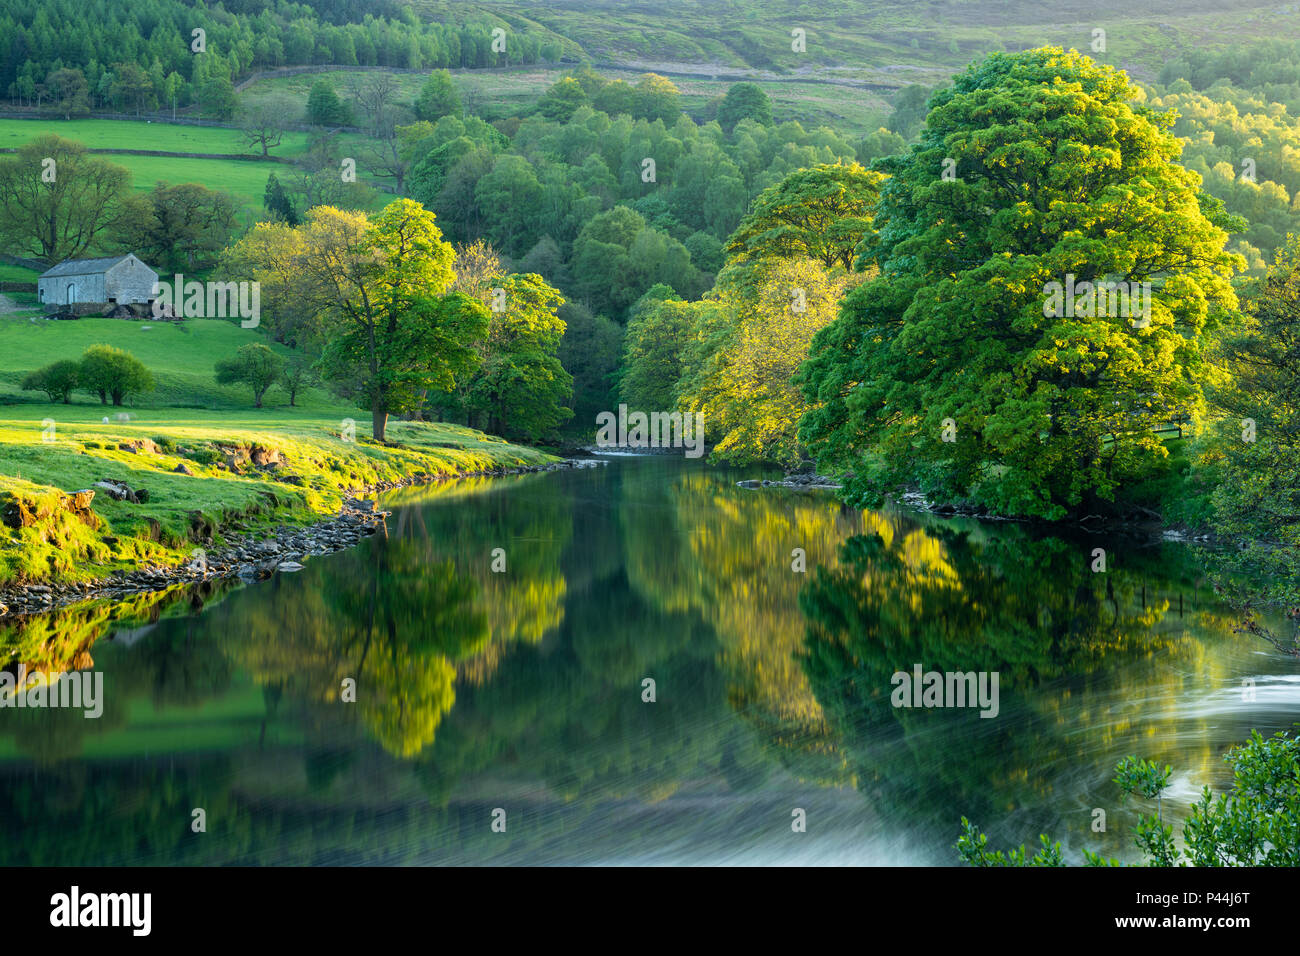 Des images miroir sur l'eau et rivière arbres se reflétant sur une mer calme, pittoresque, encore, sur la rivière Wharfe soirée ensoleillée - Wharfedale, North Yorkshire, Angleterre, Royaume-Uni. Banque D'Images